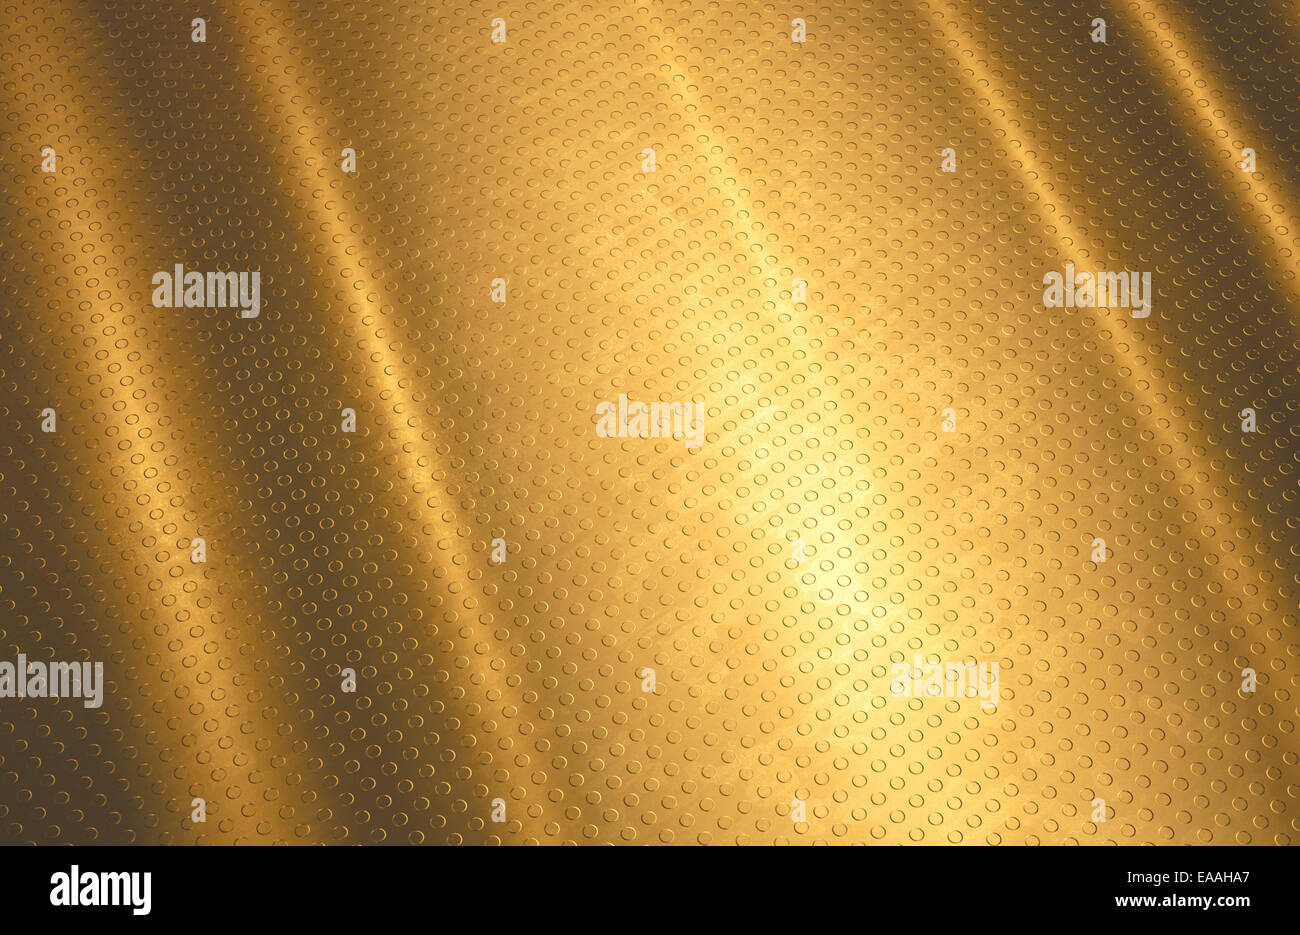 Hintergrund des Goldes mit Kreisen in selbst Erleichterung. Stockfoto